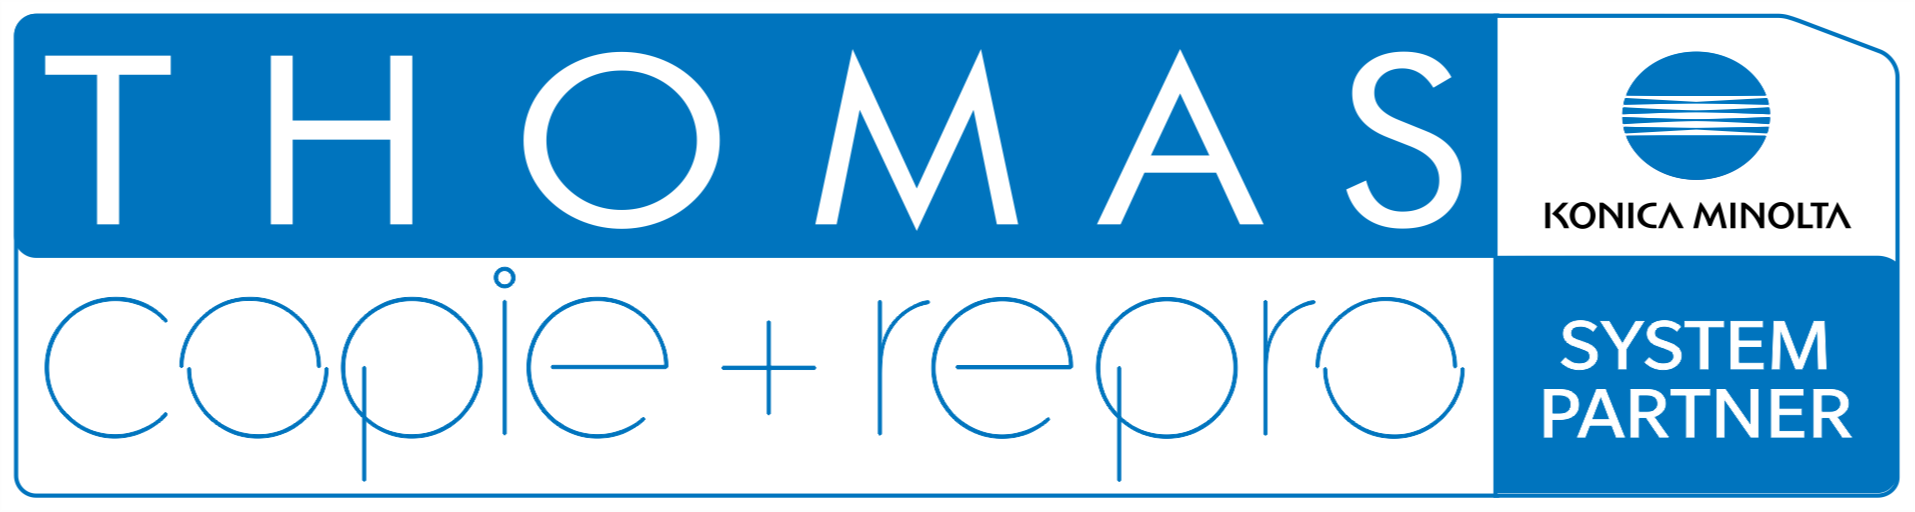 Logo der Firma THOMAS copie + repro e.K. | Copyshop | Druck-, Scan- und Kopierdienstleistungen aus Bautzen